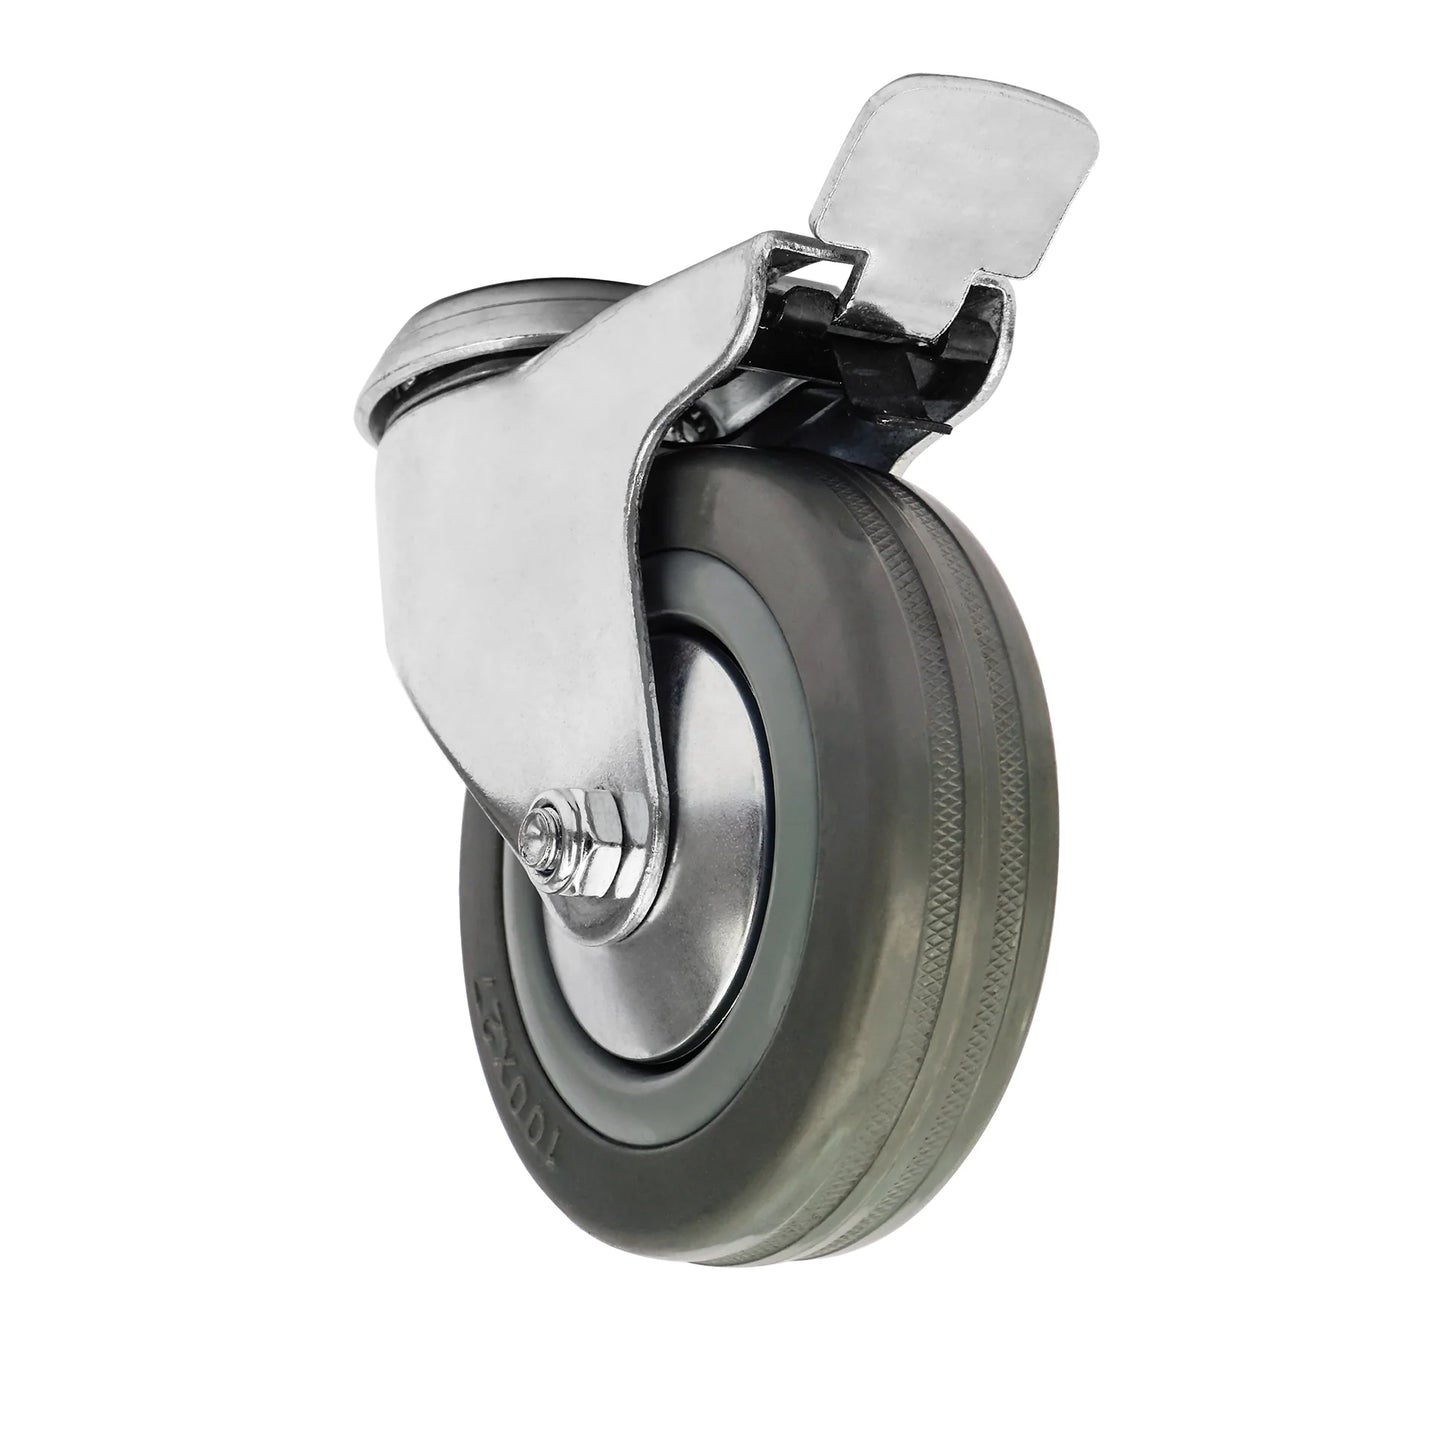 Ø 125 mm | Zestaw kołowy obrotowy z hamulcem: tworzywo guma, na otwór, łożysko ślizgowe, nośność 25 kg | 3057-125  - półprfil